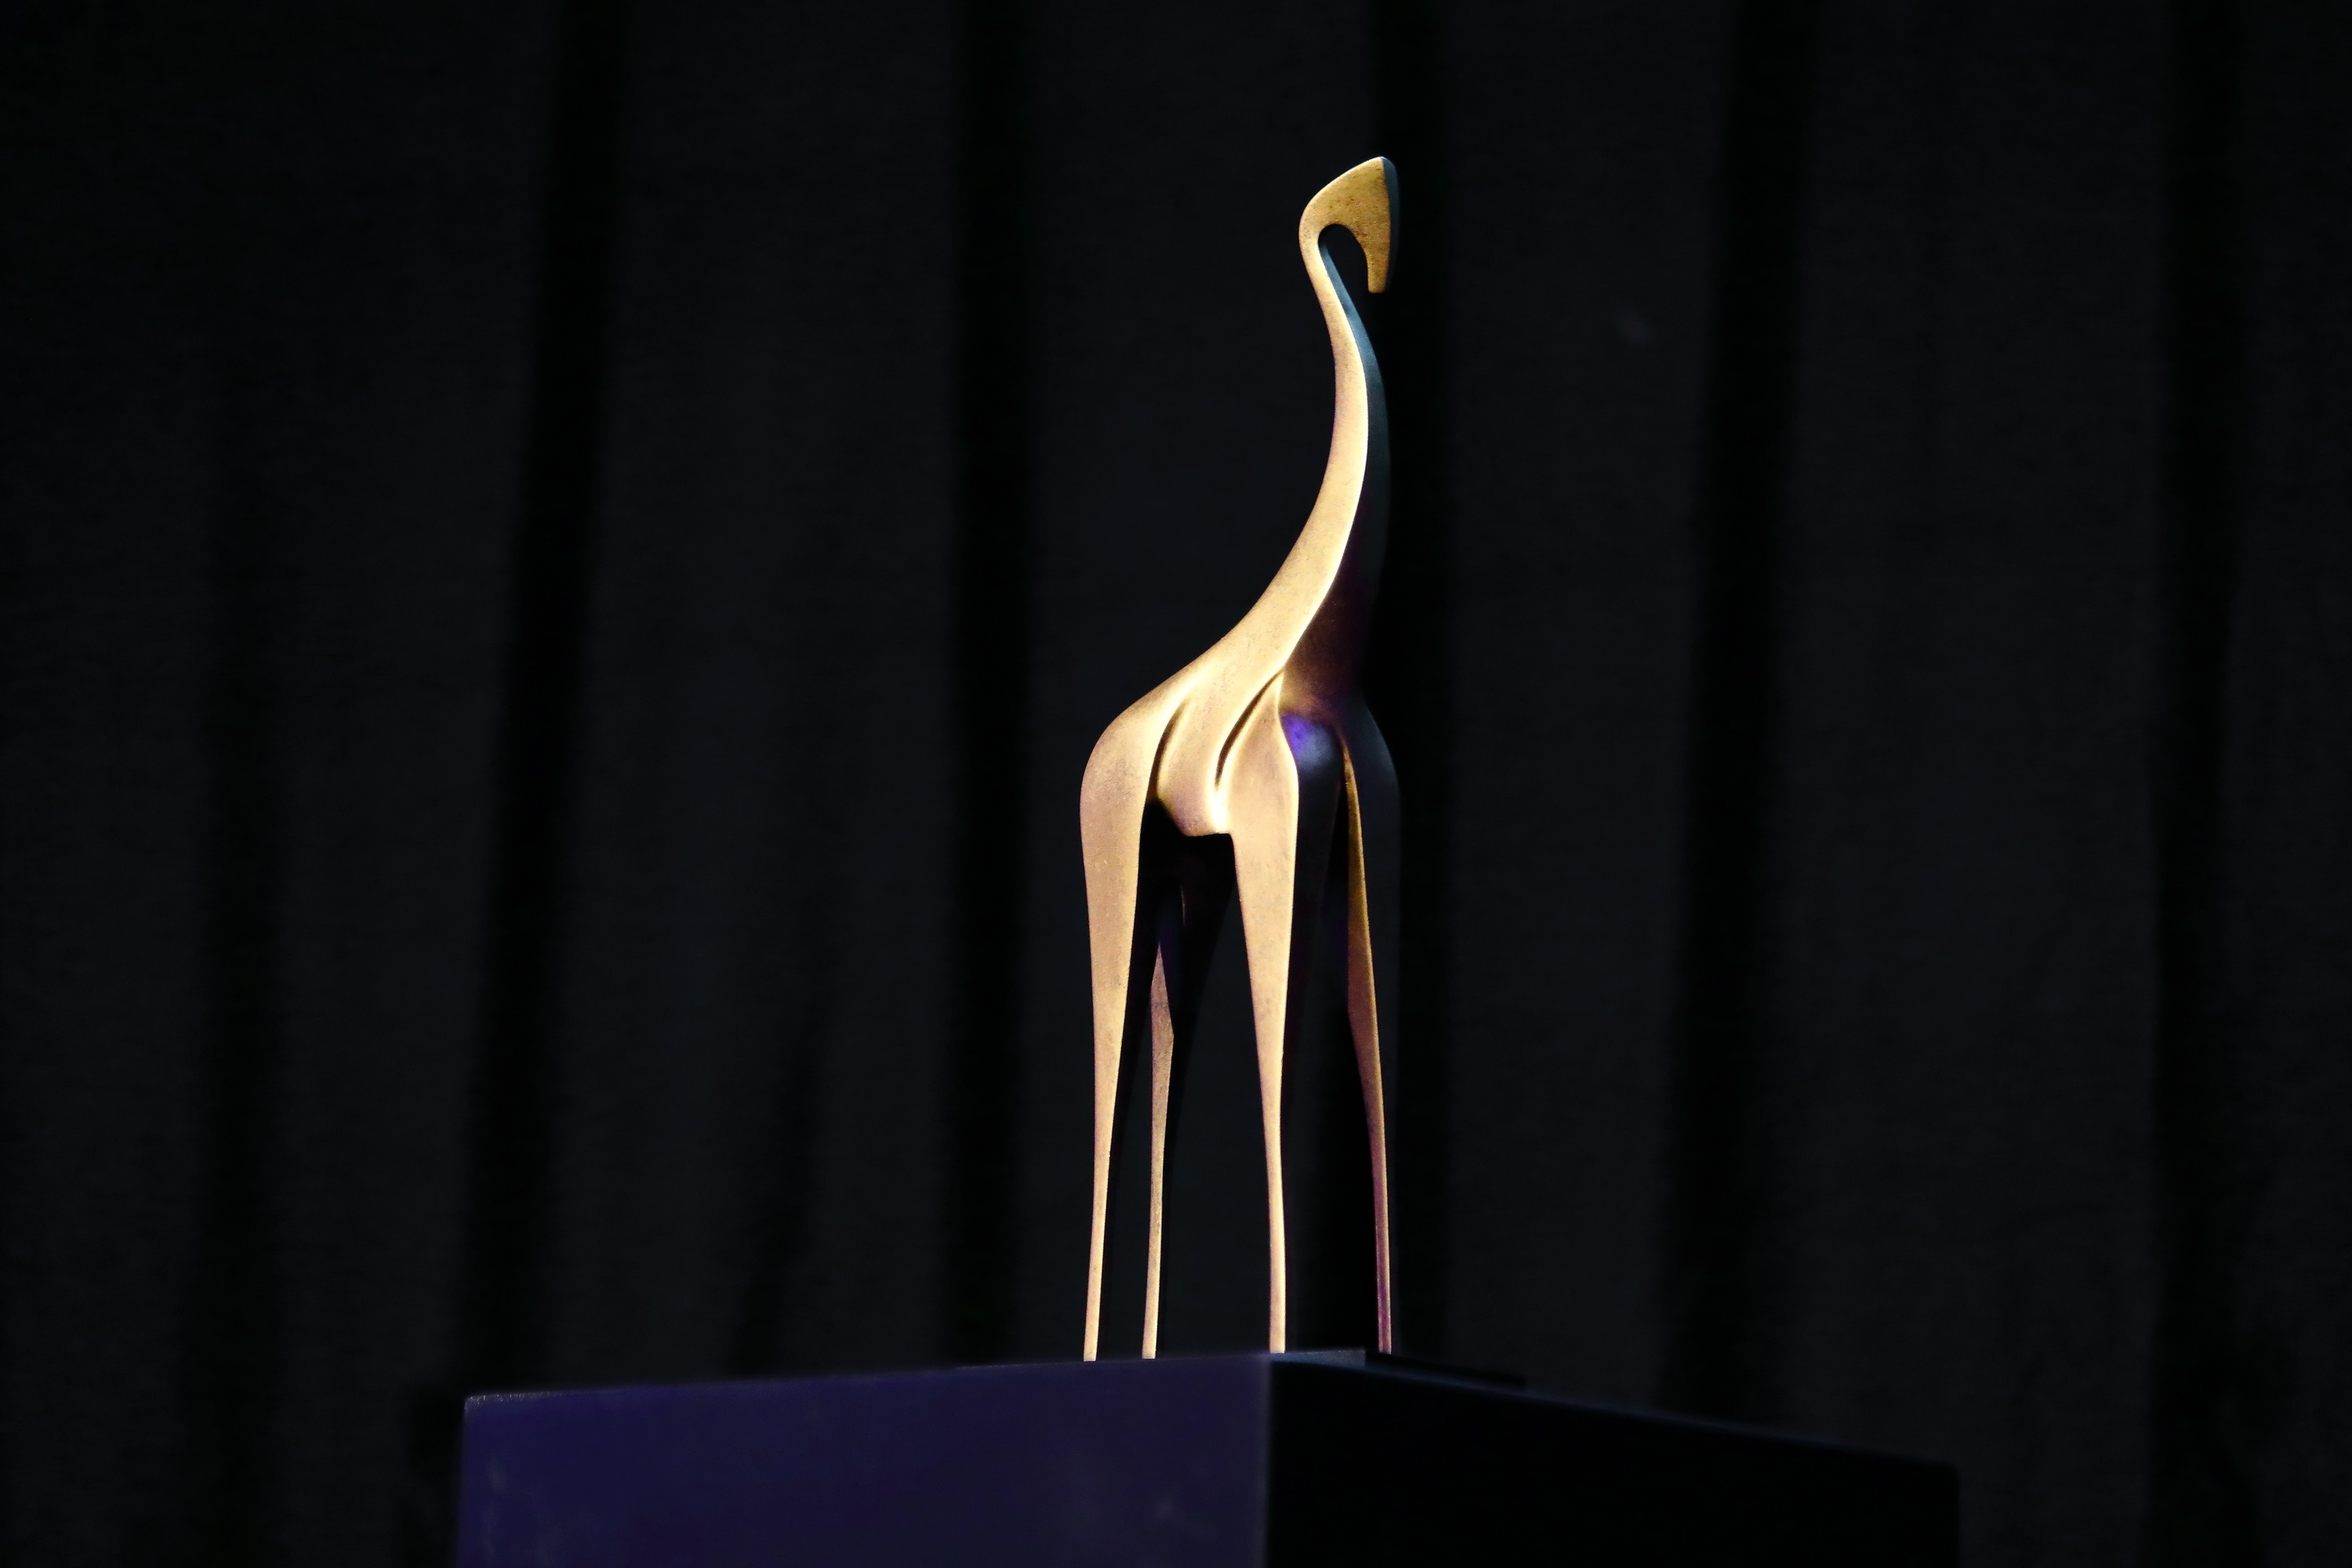 Gezocht: diverse winnaars van de Gouden Giraffe